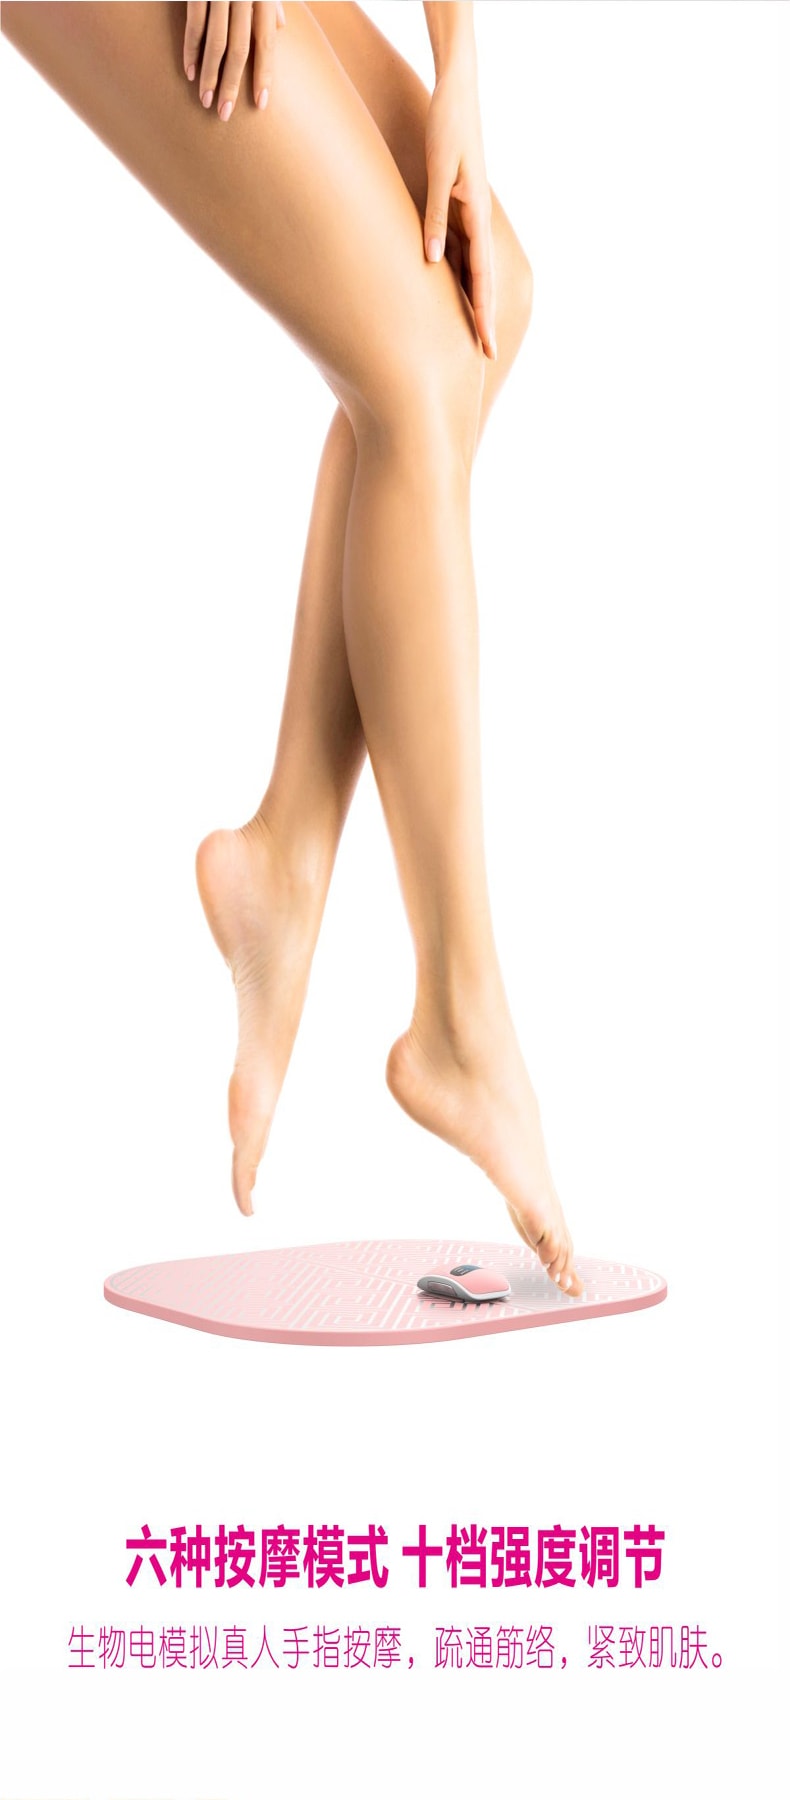 【清仓大减价】【风靡日本 EMS美腿按摩垫】LaPupil 塑形美腿缓解疲劳按摩脚垫 1件